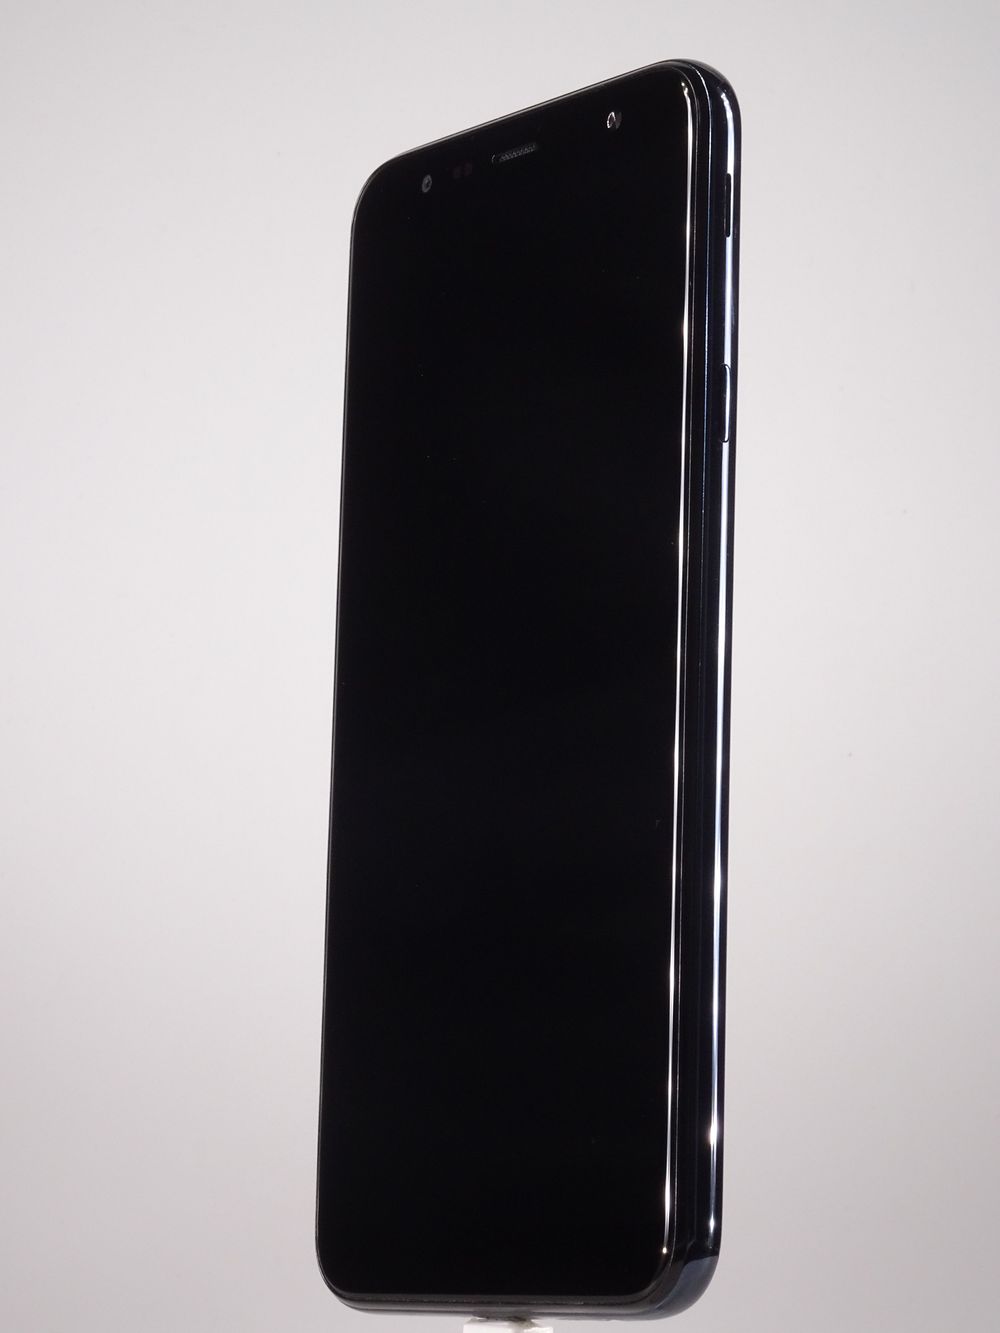 Telefon mobil Samsung Galaxy J4 Plus (2018), Black, 32 GB, Bun